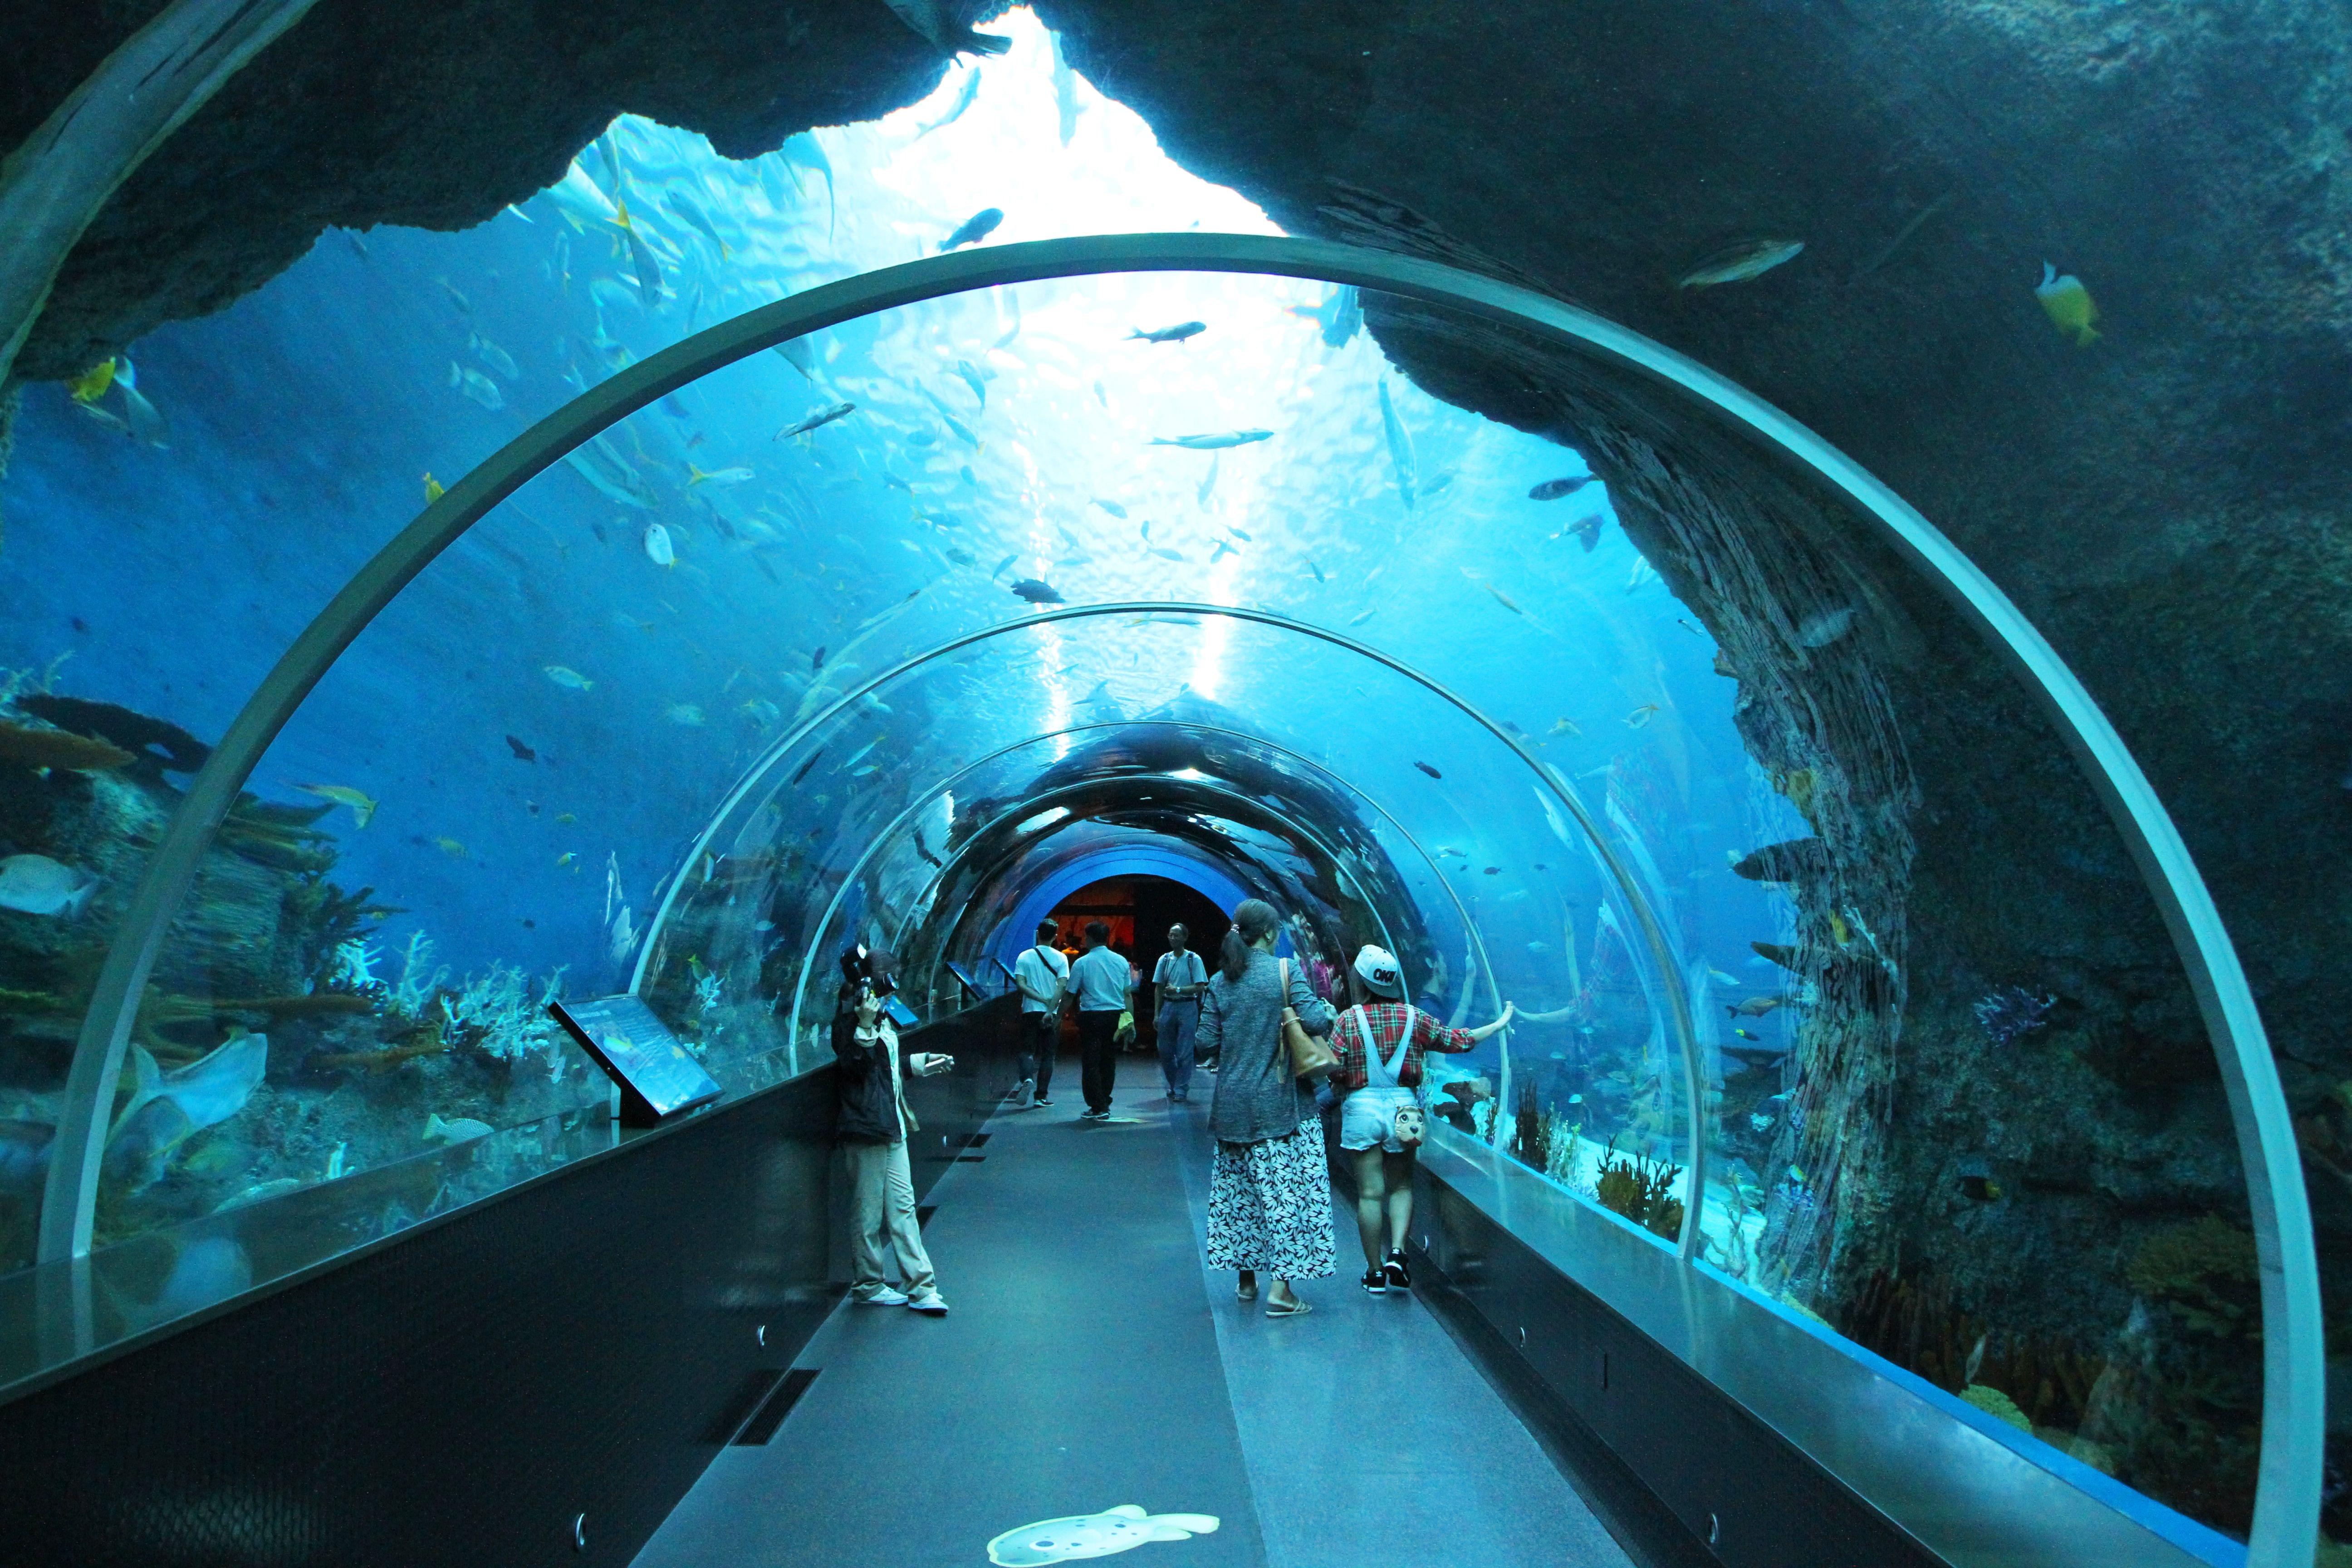 Plan Your Visit to S.E.A Aquarium